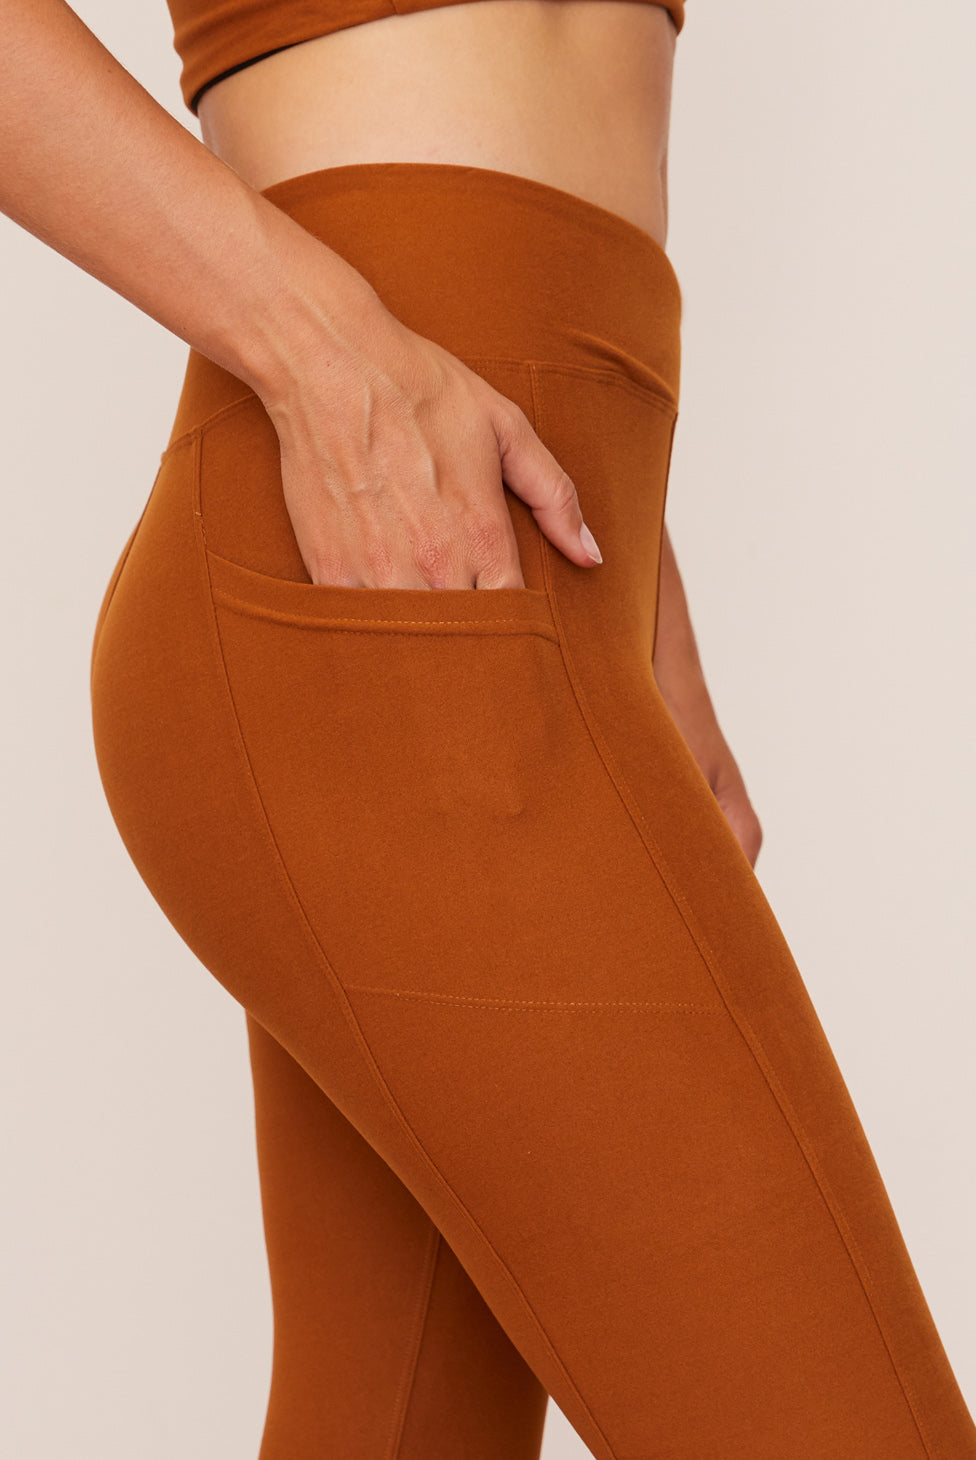 Tangerine Womens Gray 21.5 Inseam Leggings 1 Inside Pocket Size XL